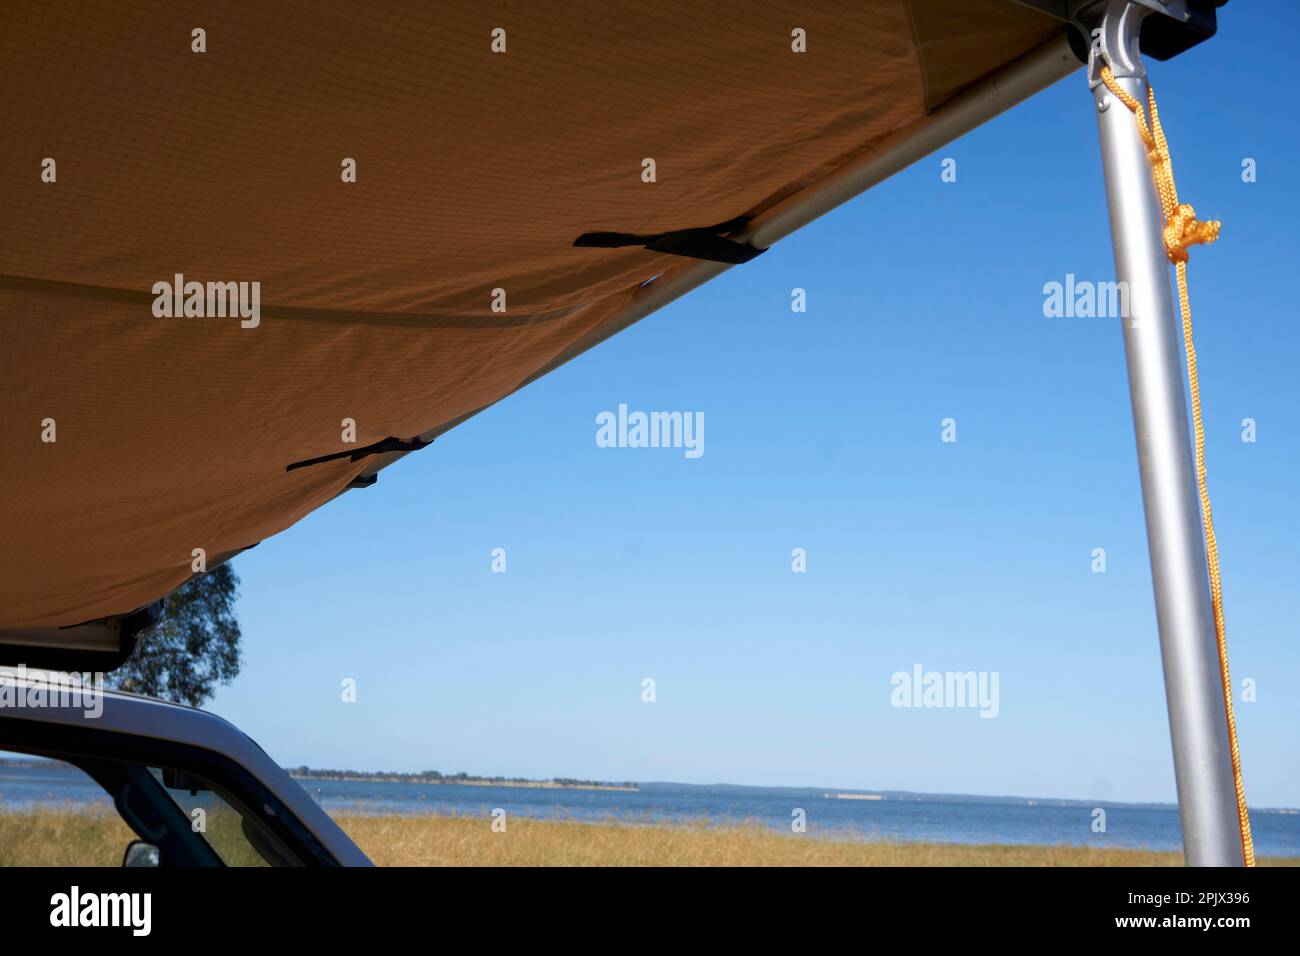 Amerikanische Flagge Sonnenschutz im Auto Windschutzscheibe Stockfotografie  - Alamy